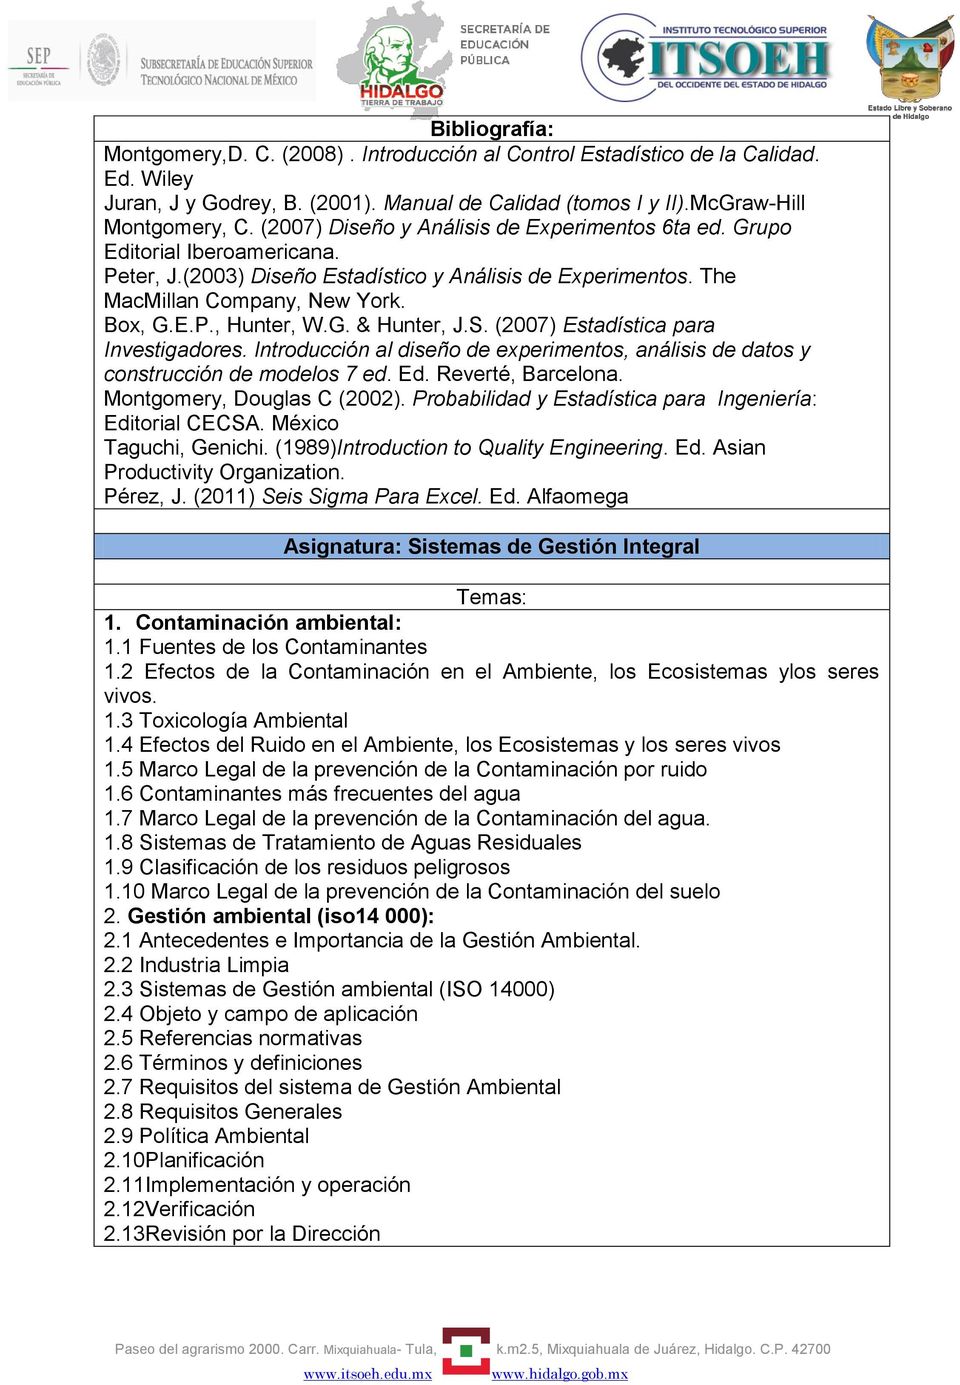 G. & Hunter, J.S. (2007) Estadística para Investigadores. Introducción al diseño de experimentos, análisis de datos y construcción de modelos 7 ed. Ed. Reverté, Barcelona.